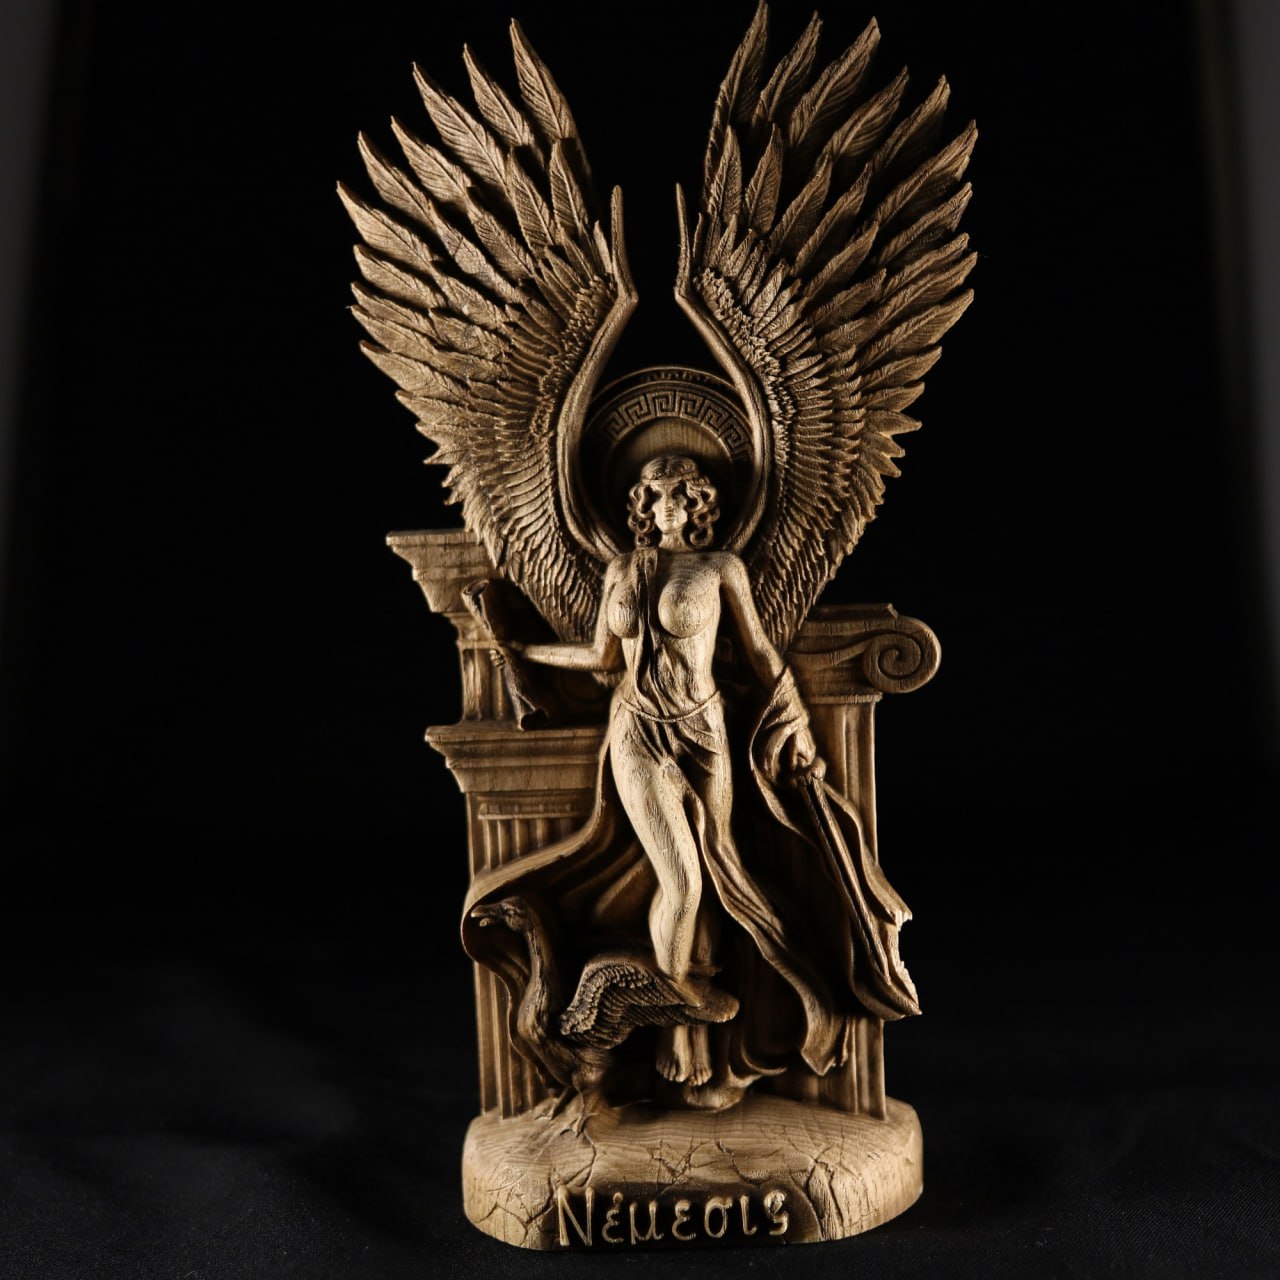 Nemesis: Handmade Wooden Statue Carving of the Greek Goddess of Vengeance